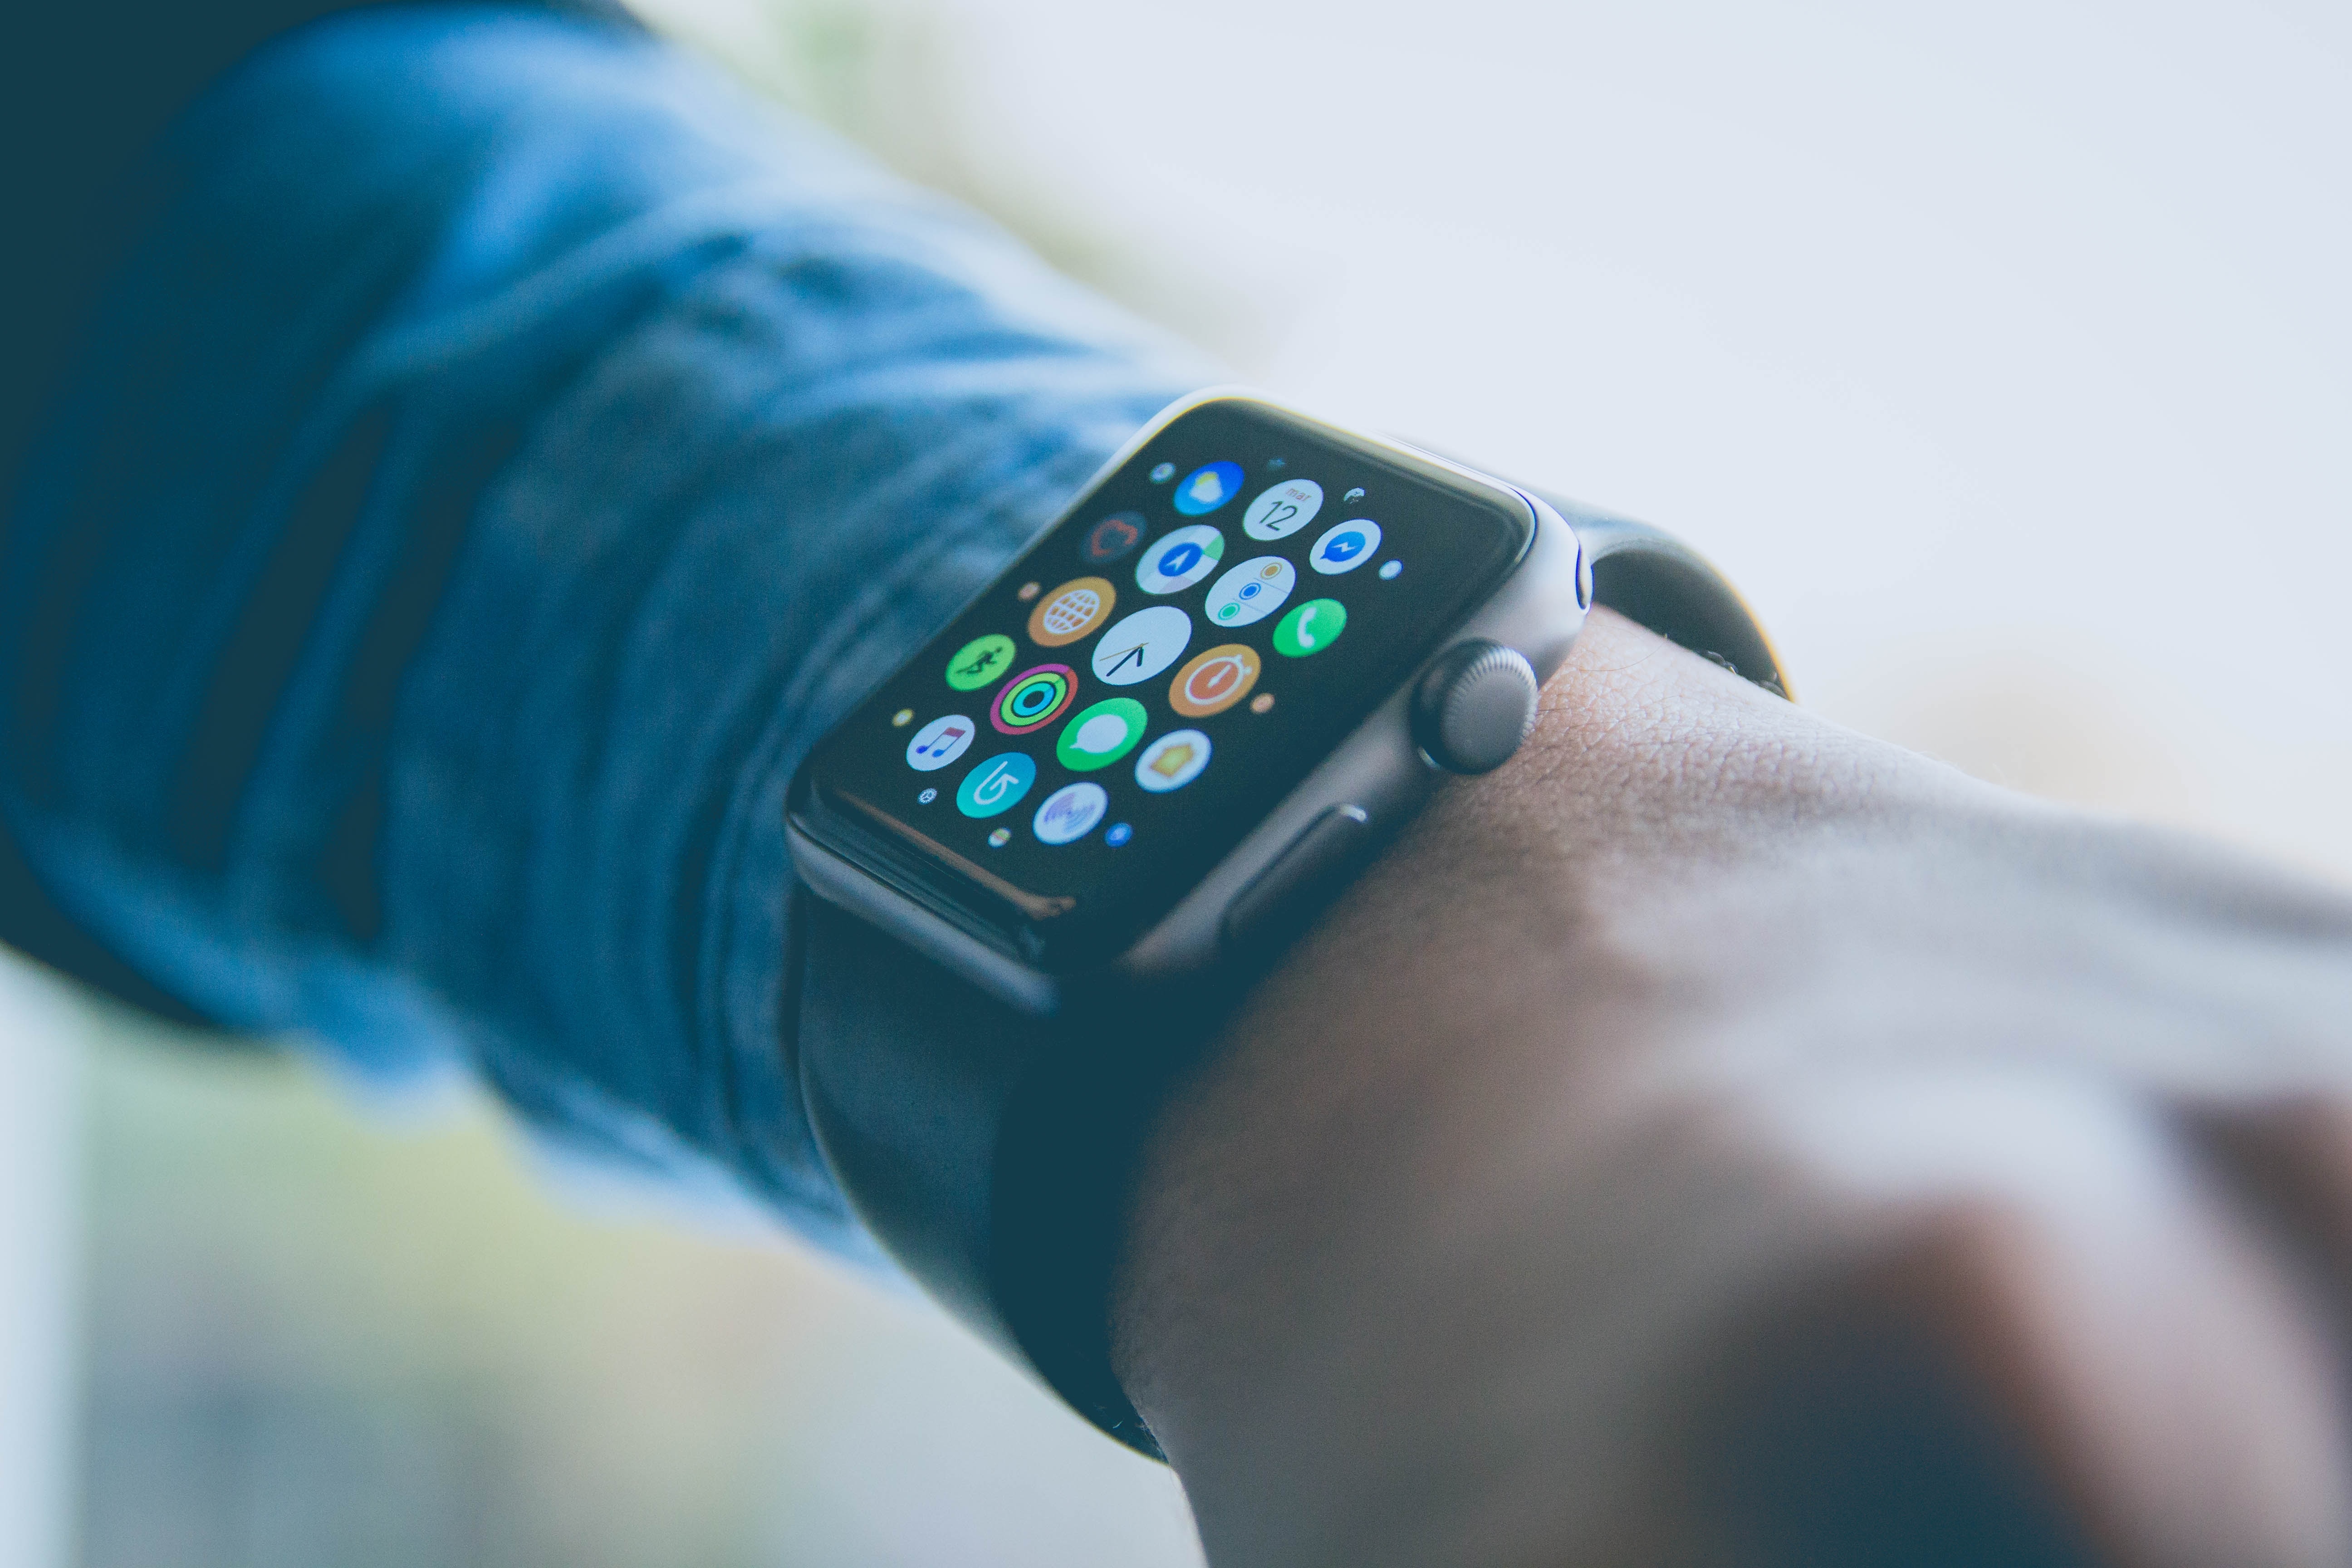 Apple Watch continua no topo do mercado global de smartwatches